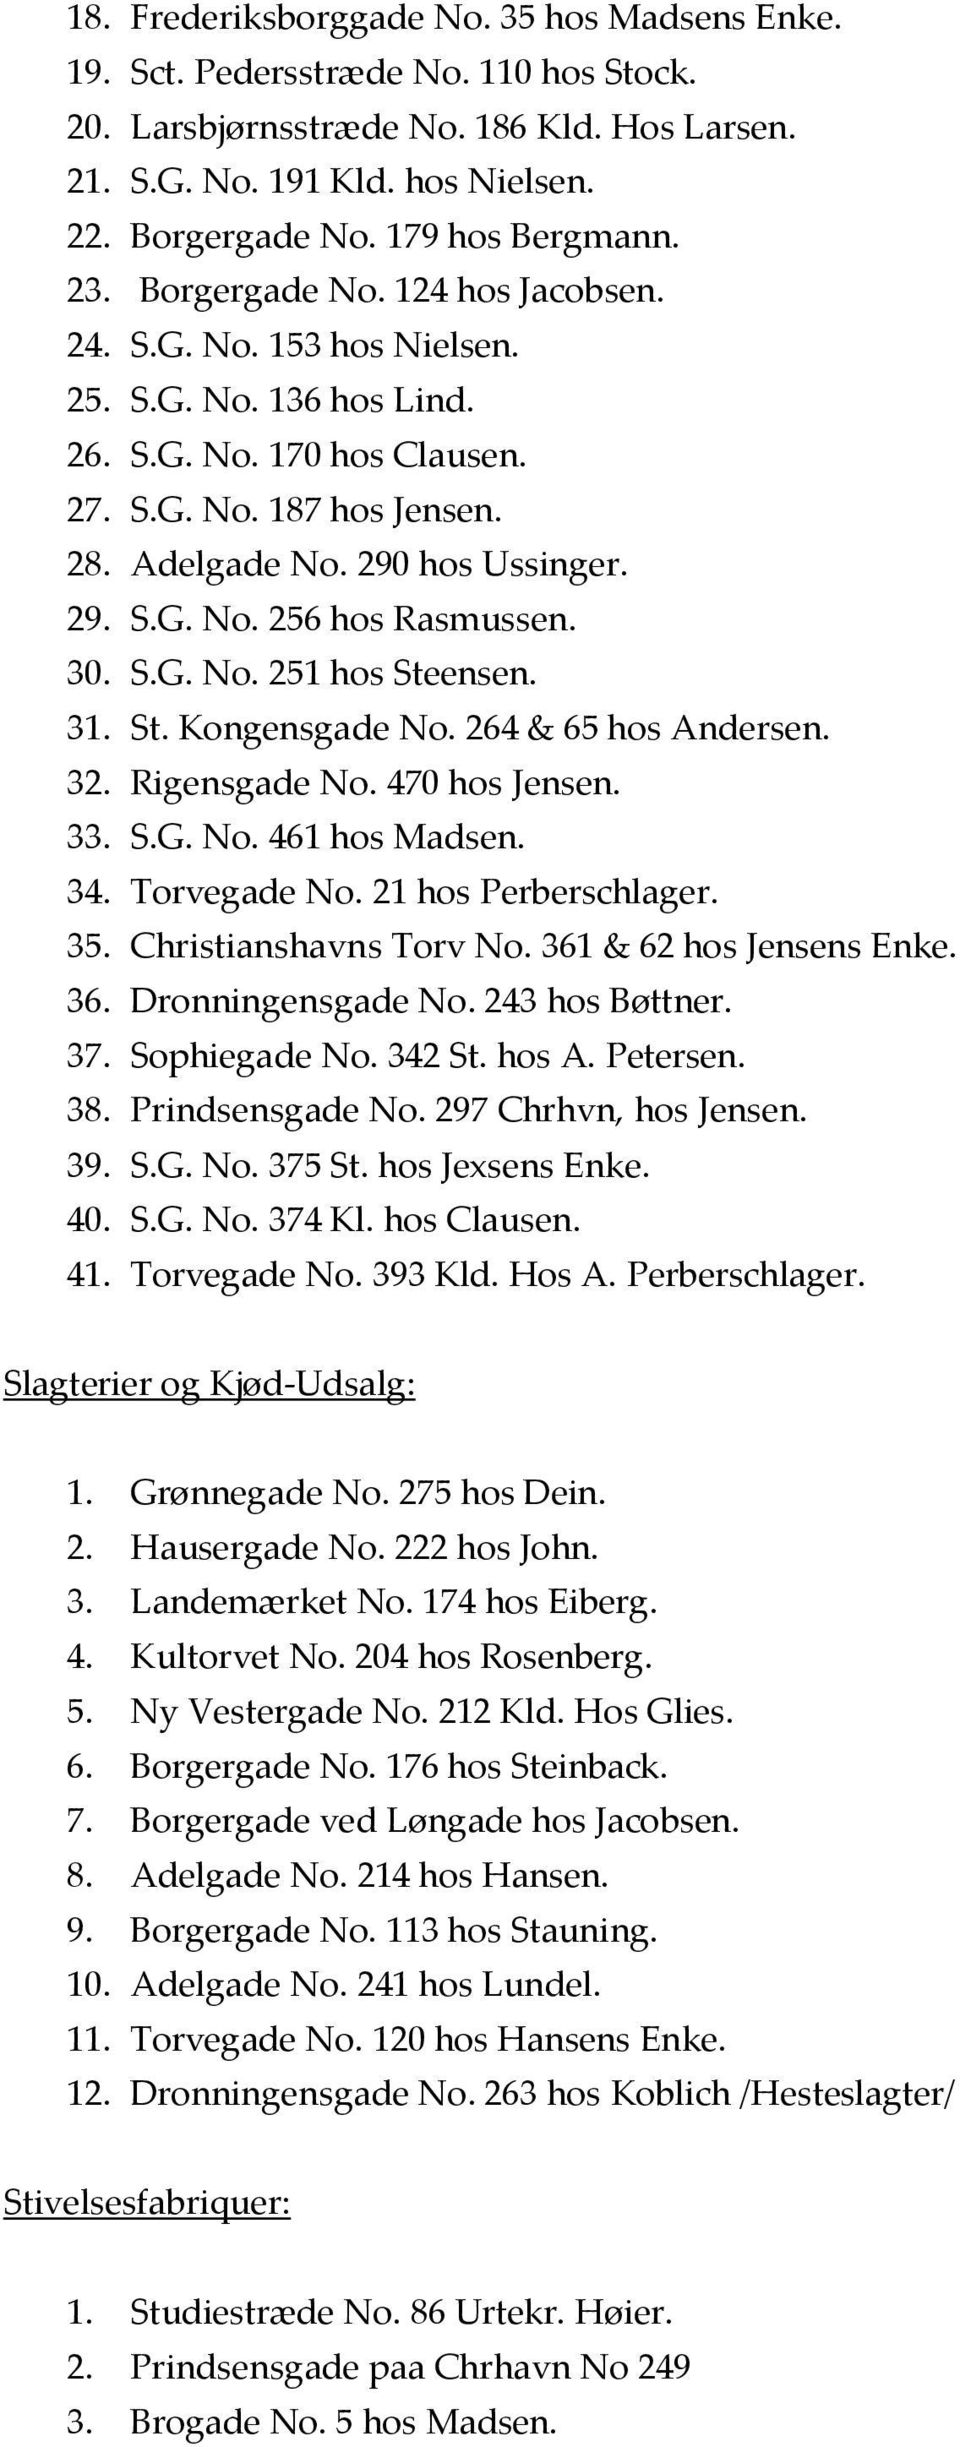 290 hos Ussinger. 29. S.G. No. 256 hos Rasmussen. 30. S.G. No. 251 hos Steensen. 31. St. Kongensgade No. 264 & 65 hos Andersen. 32. Rigensgade No. 470 hos Jensen. 33. S.G. No. 461 hos Madsen. 34.